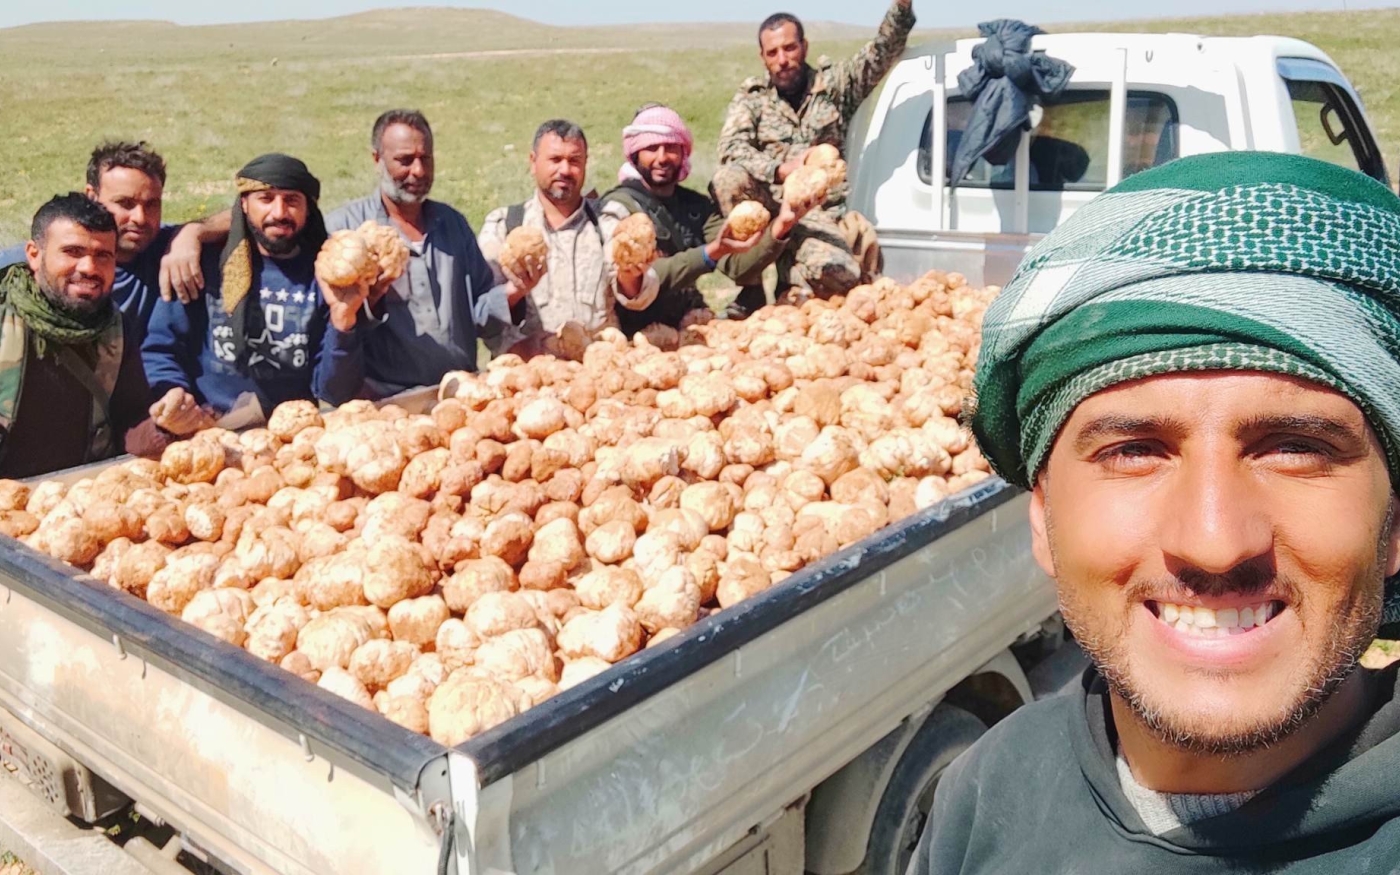 Des caveurs de truffes syriens avec leur récolte (réseaux sociaux)